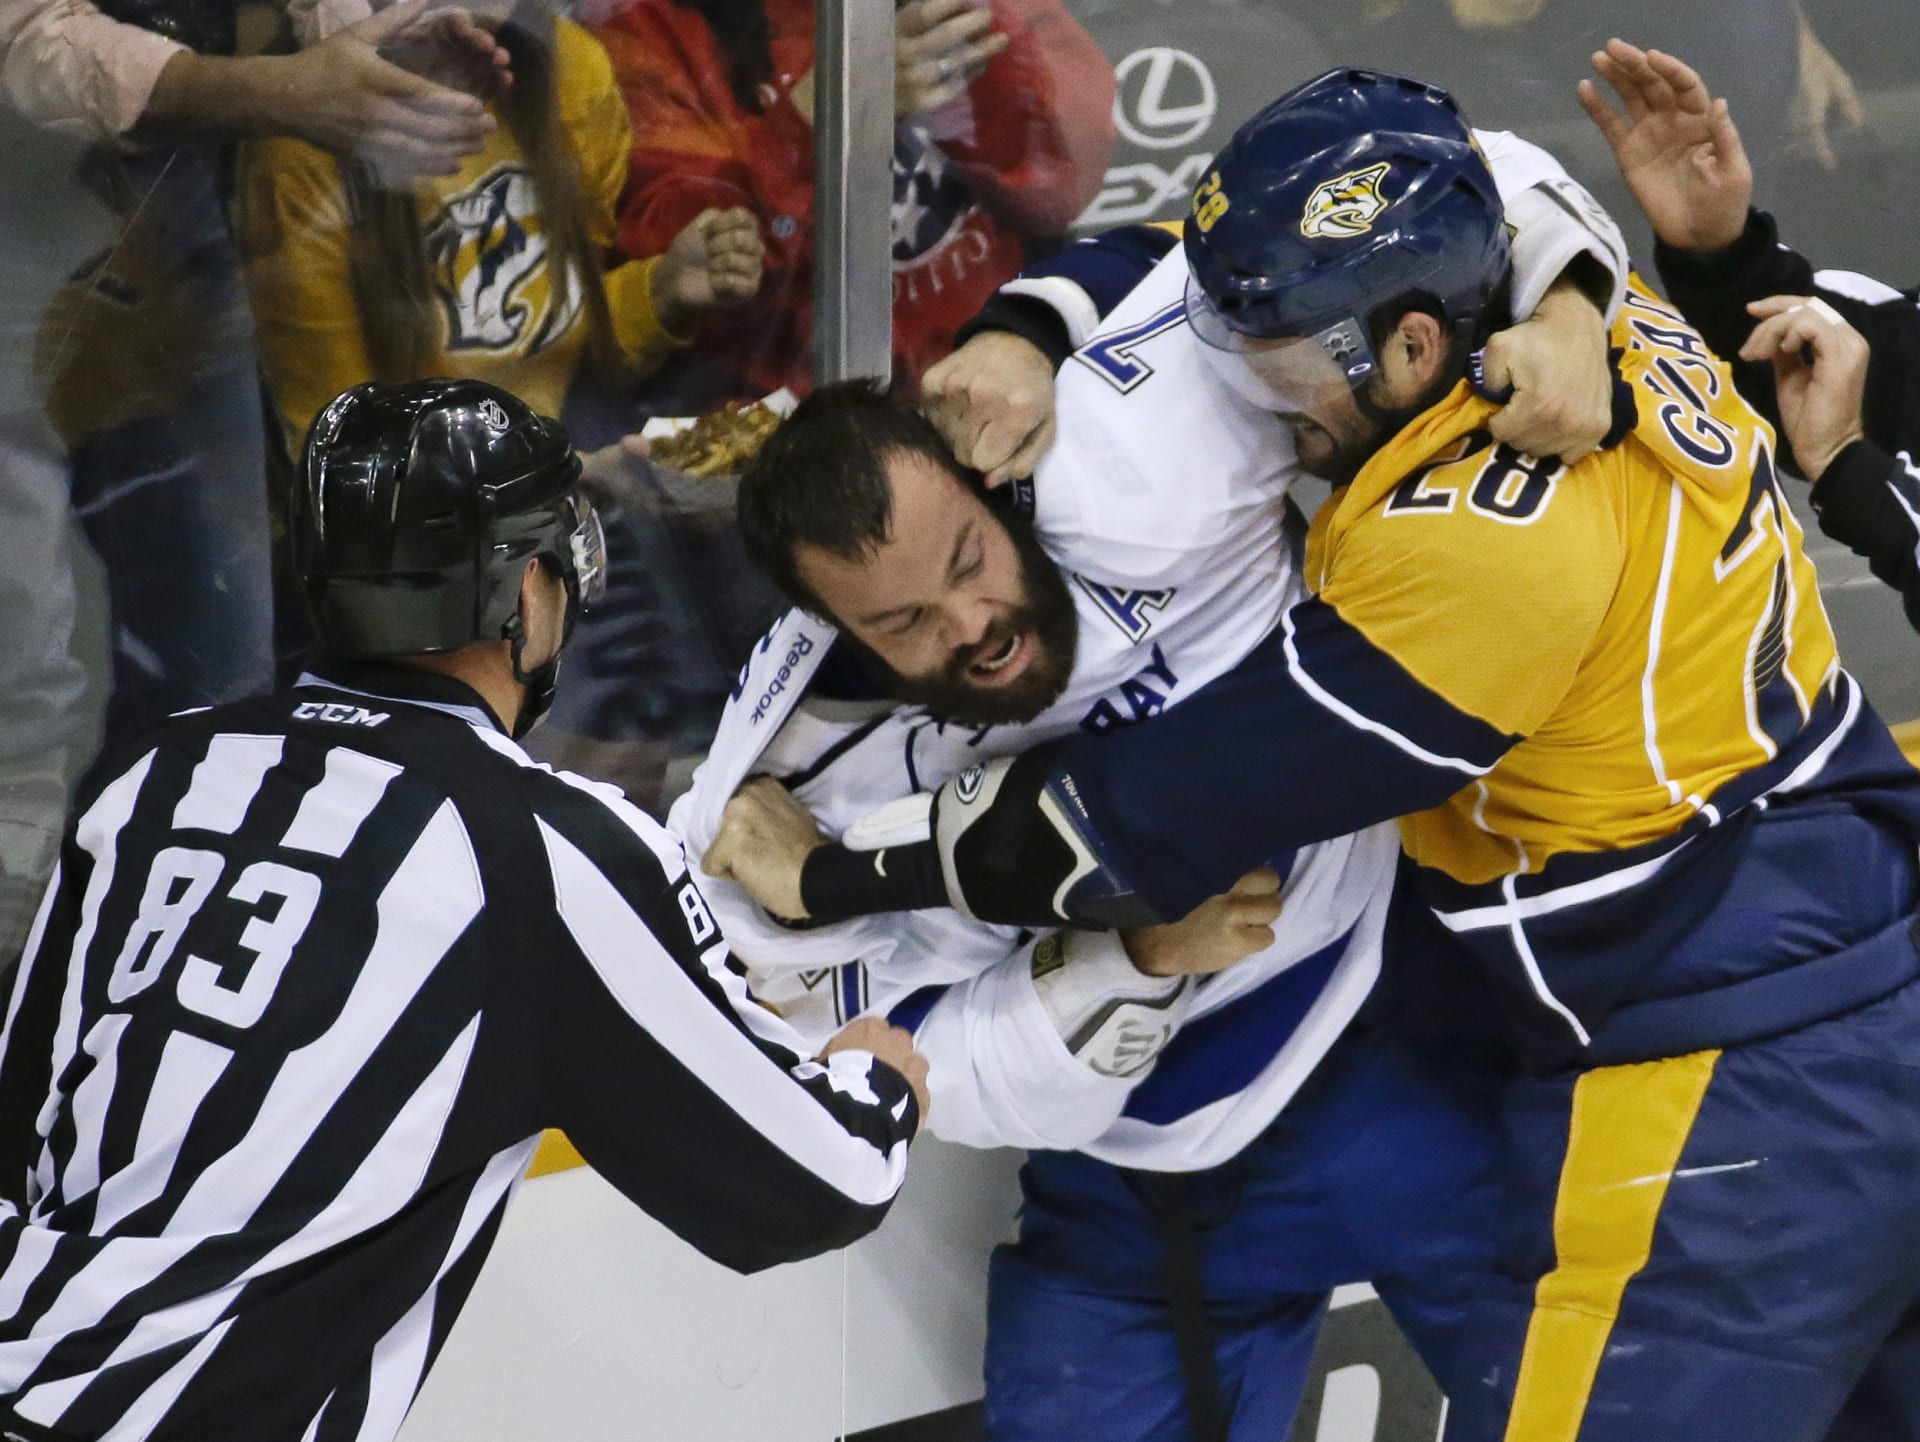 Bitka Radko Gudase v NHL. Dávní hokejoví mušketýři by asi zírali.